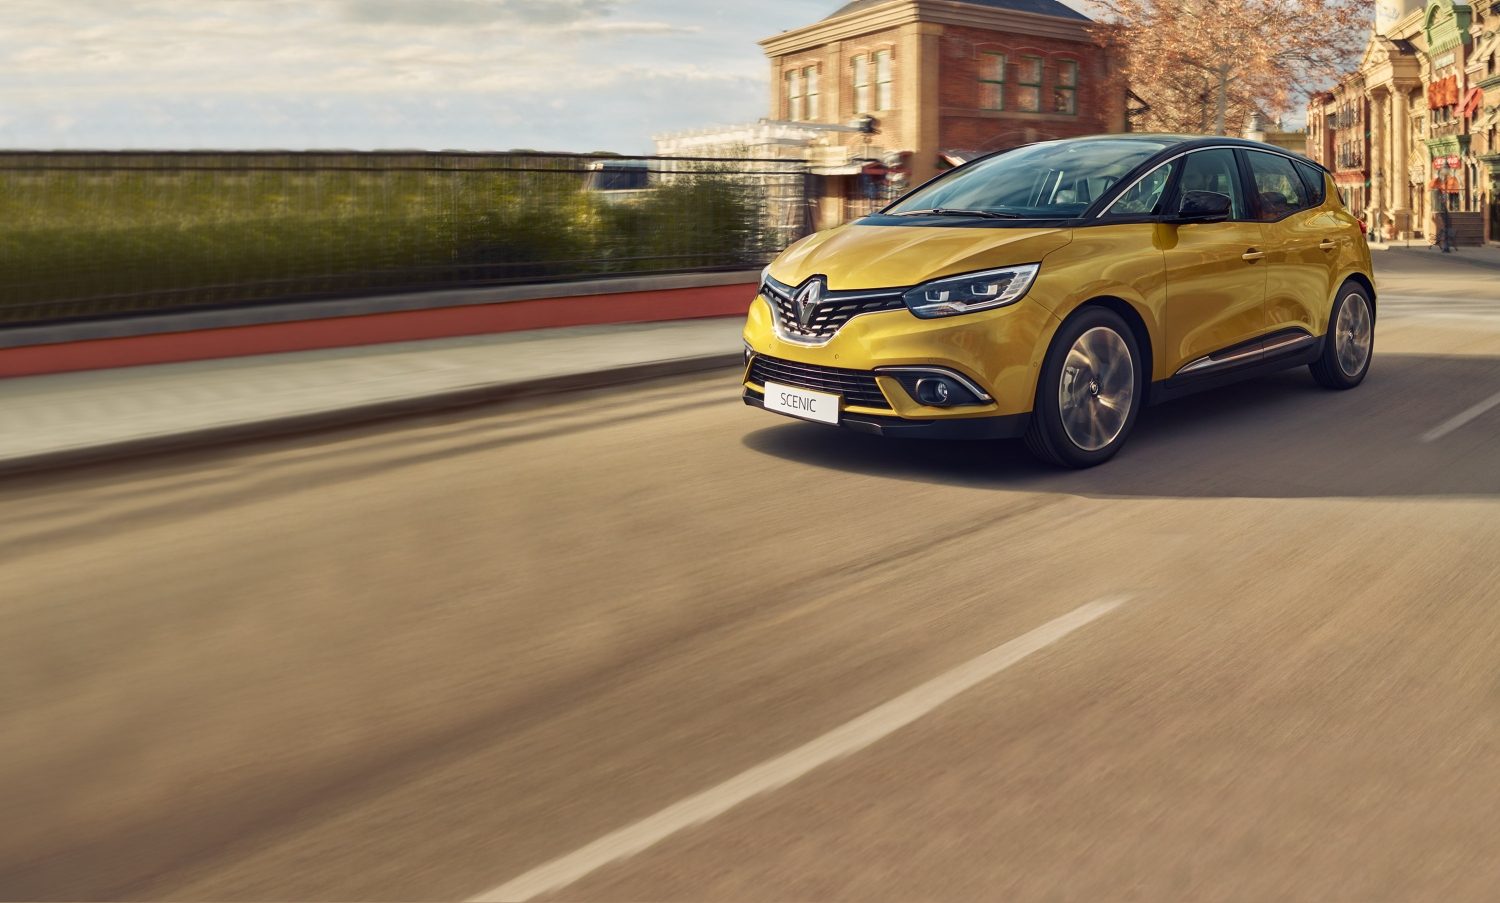 Nový rodinný vůz Renault Scénic pro klidnou a bezpečnou jízdu